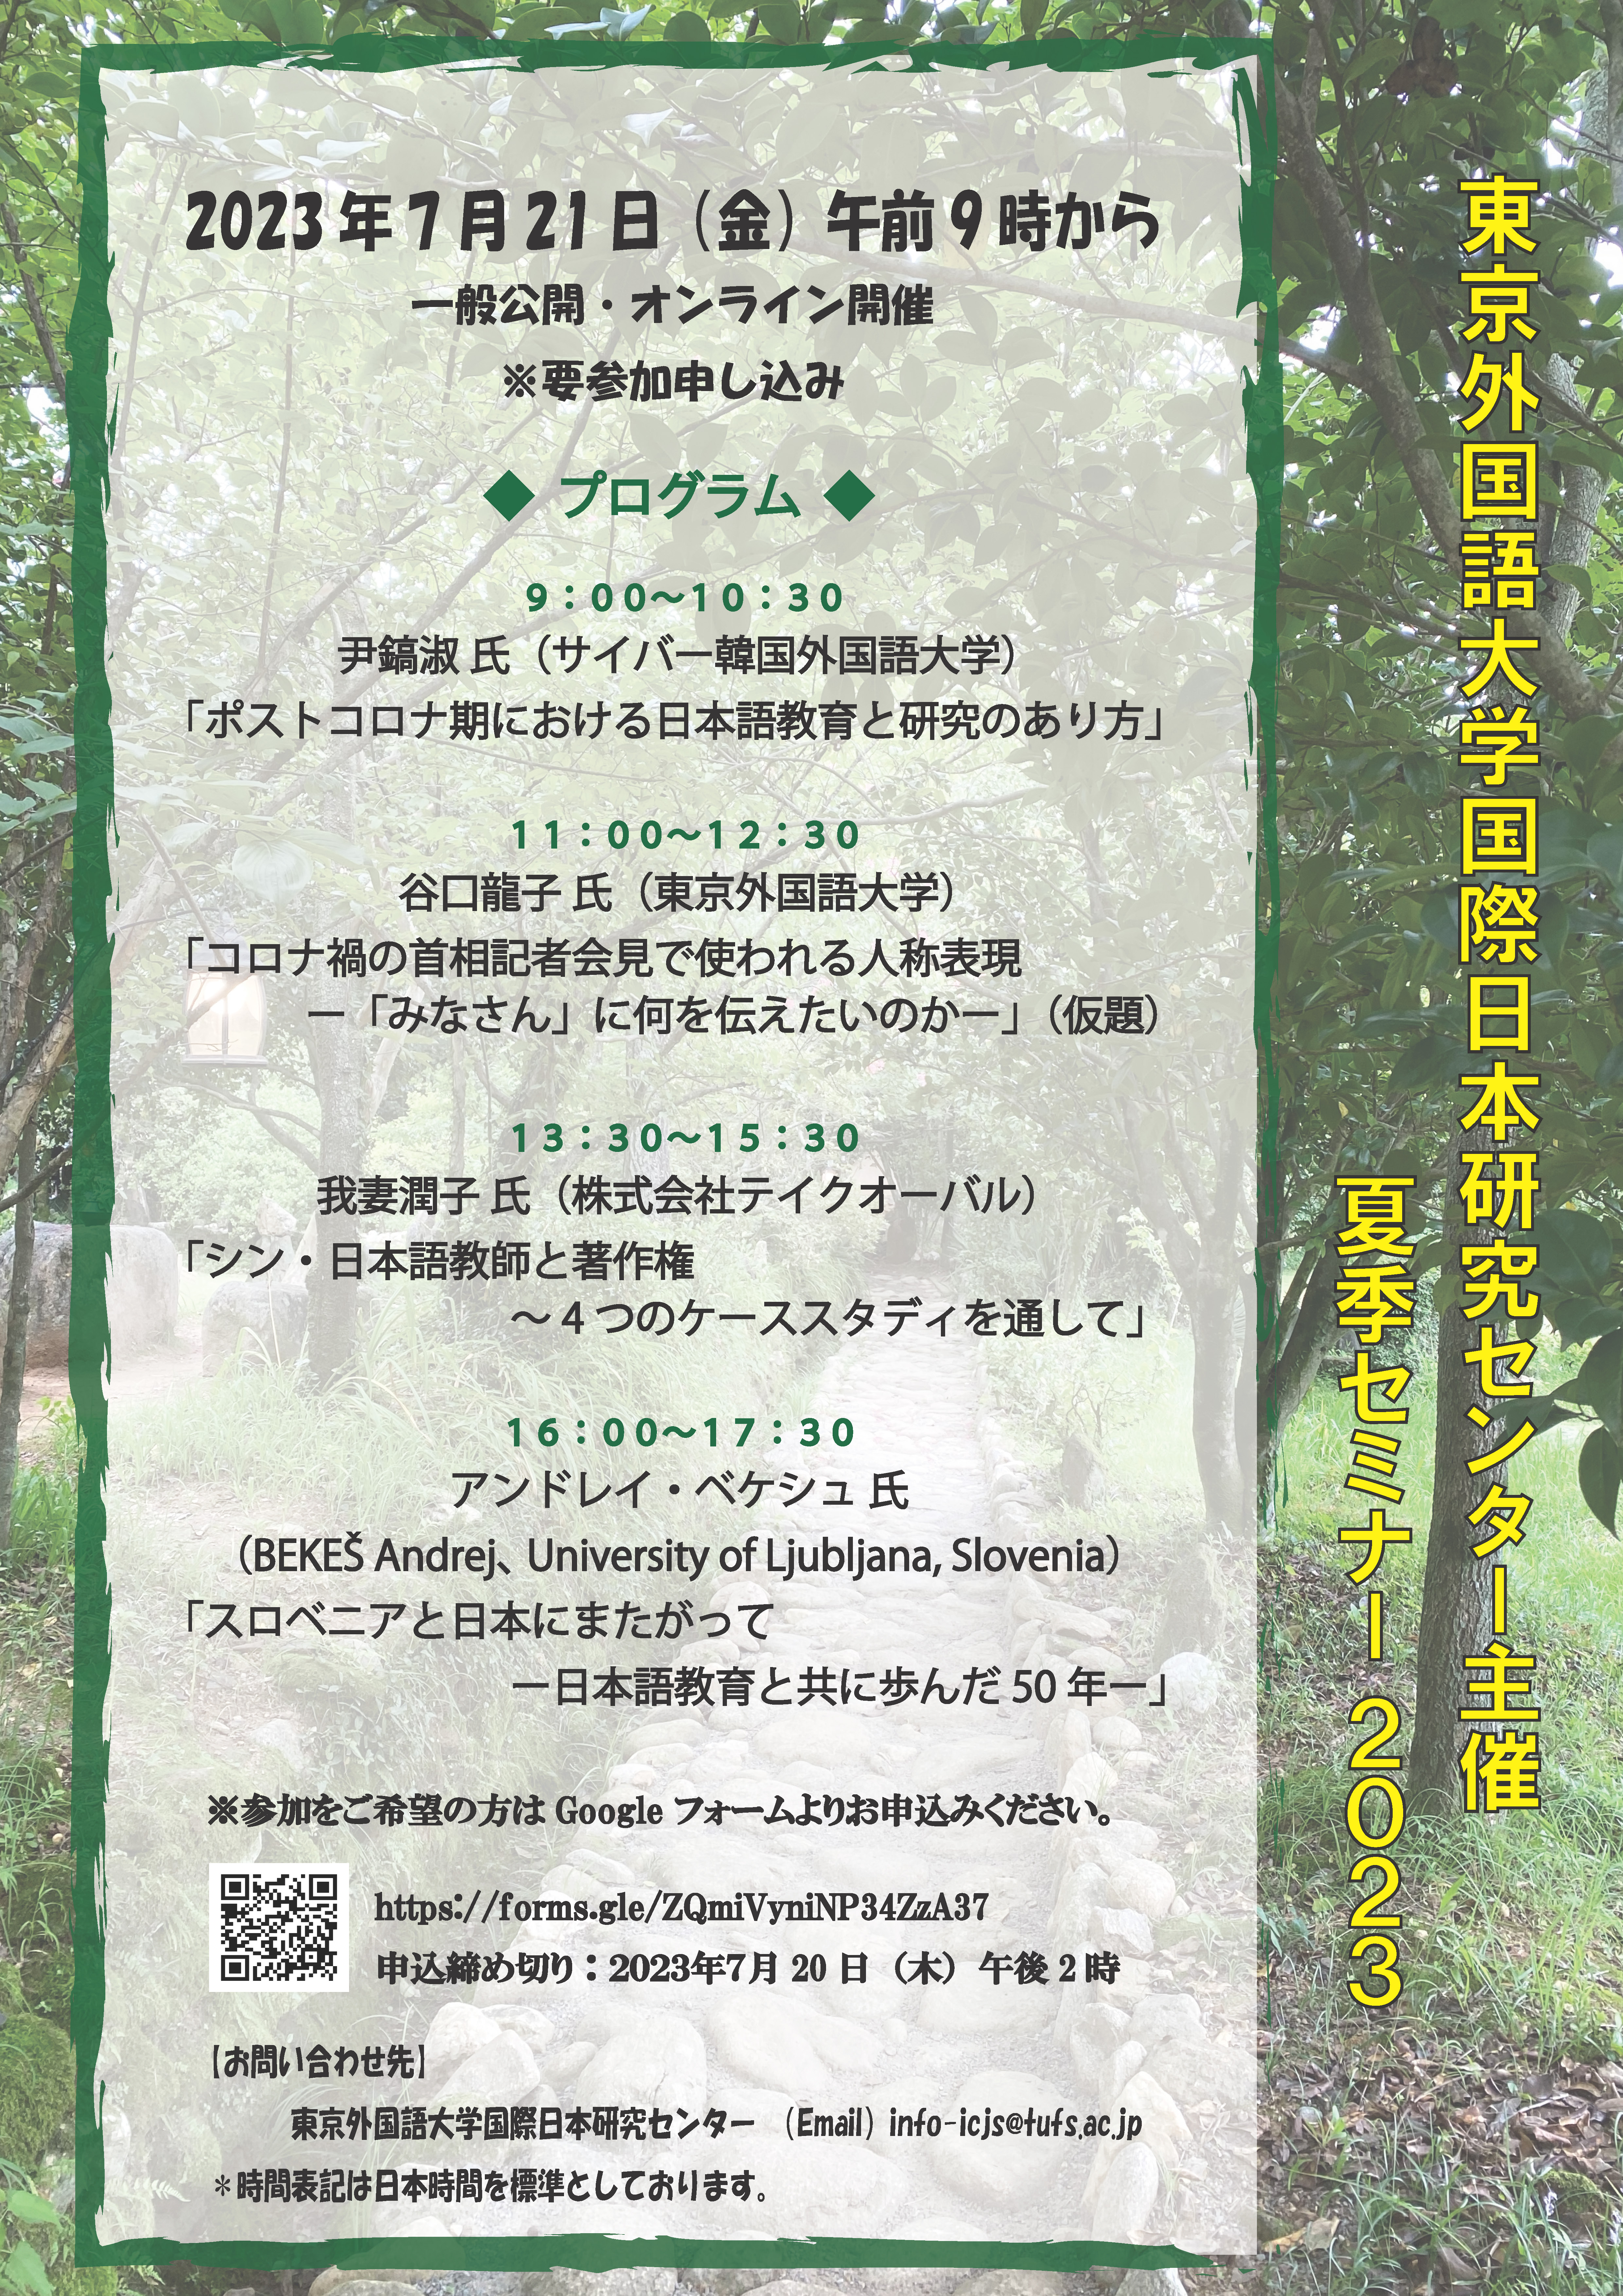 東京外国語大学夏季セミナーのご案内